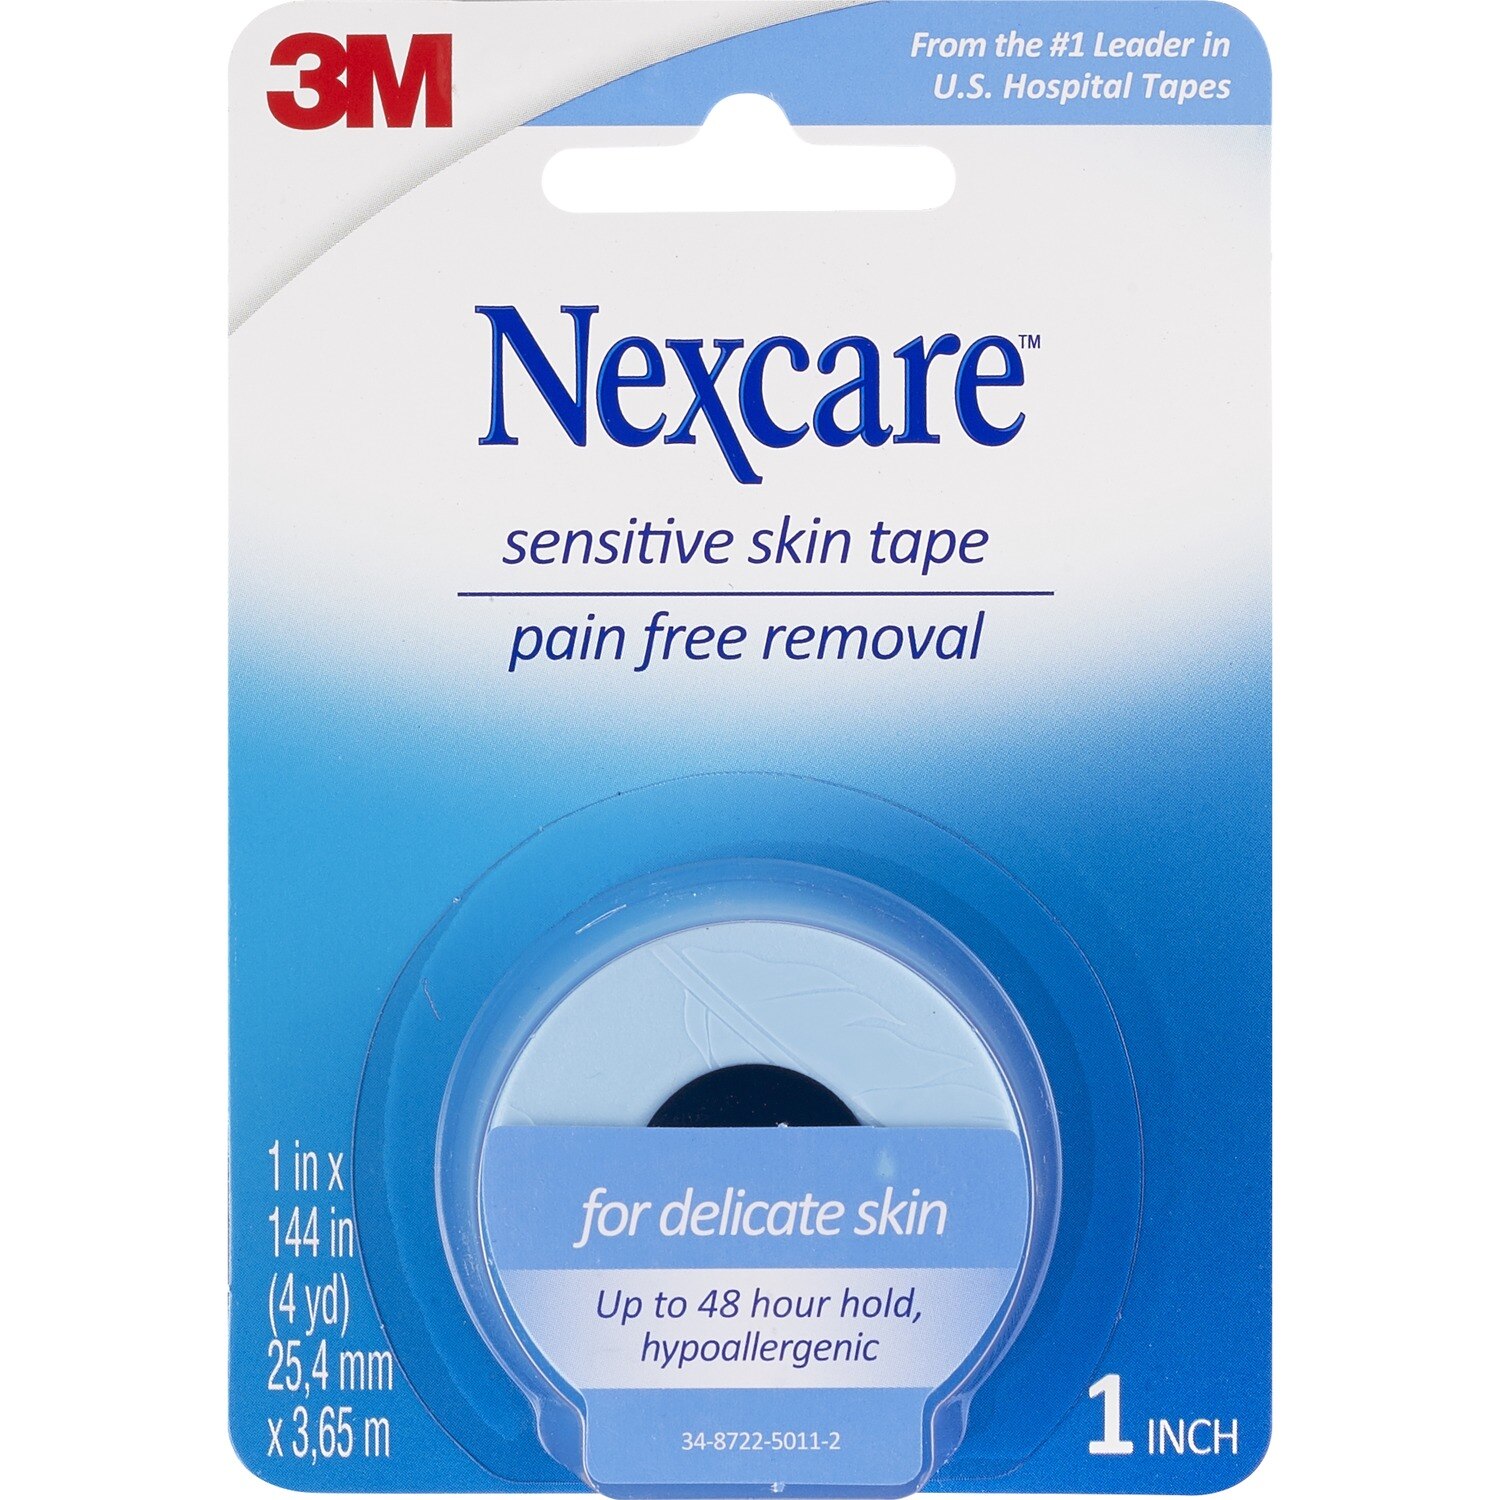 Nexcare Sensitive Skin Tape, 1 in x 4 yd (25.4 mm x 3.65 m)